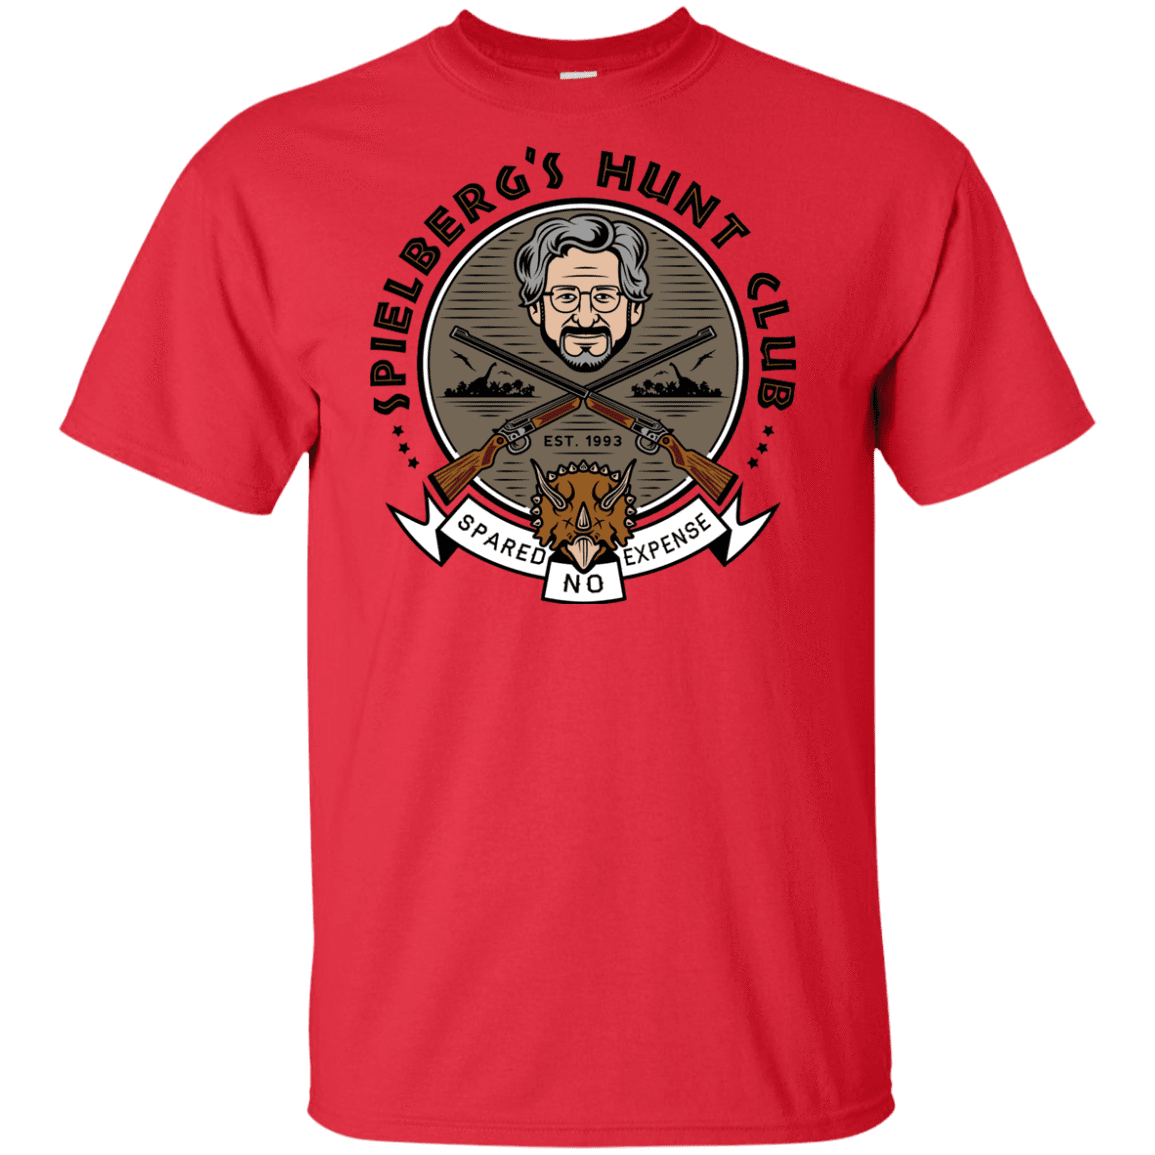 T-Shirts Red / XLT Spielbergs Hunt Club Tall T-Shirt